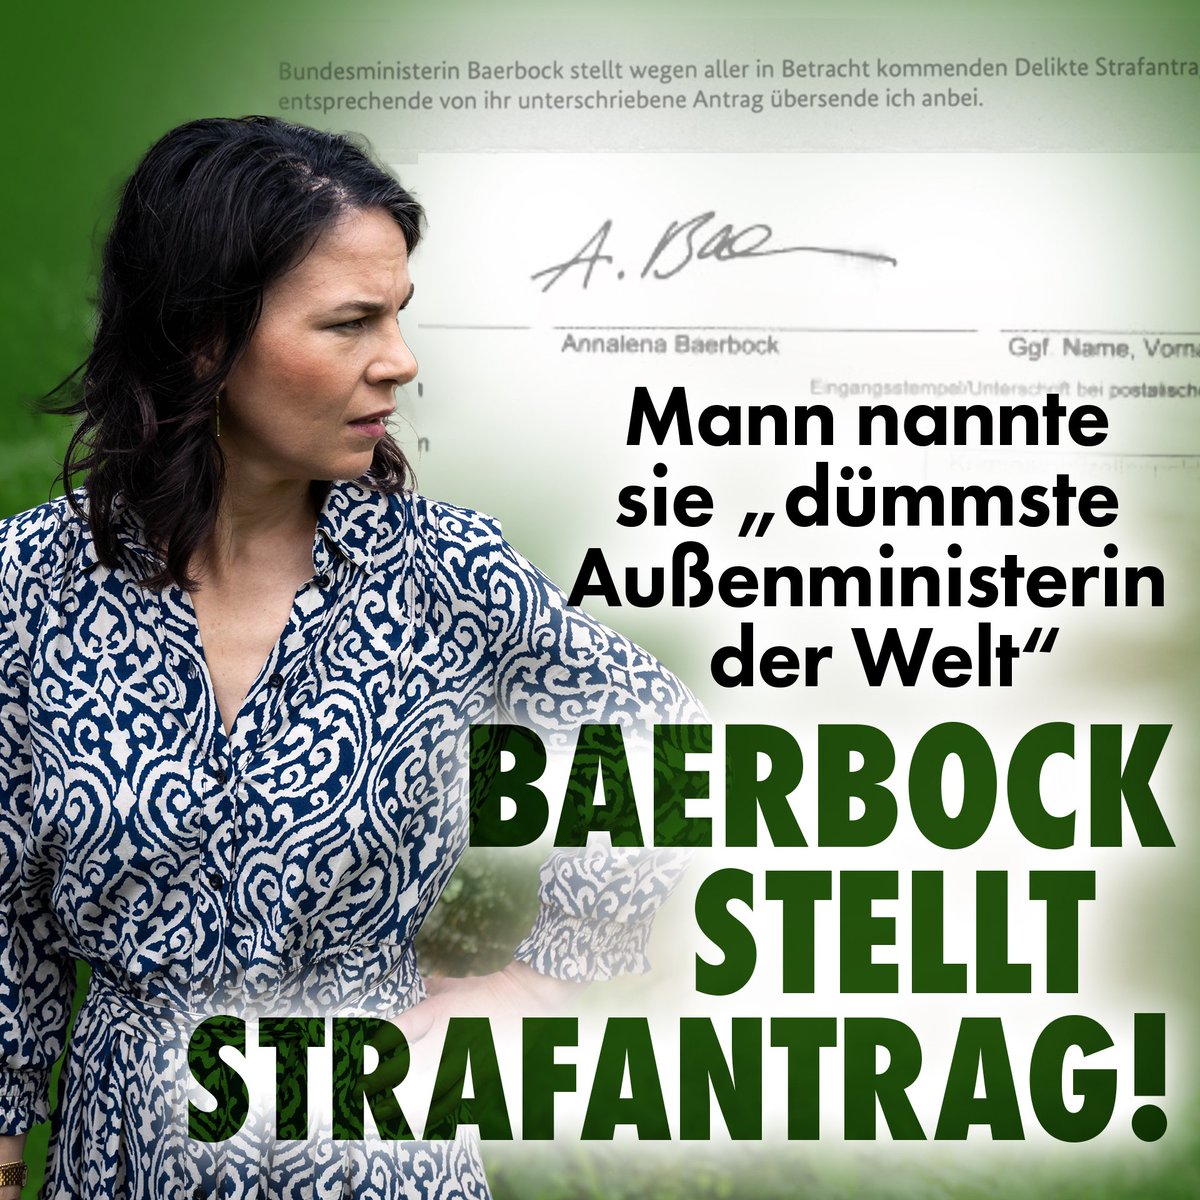 Finde es total schlimm, dass mal jemand Annalena #Bärbock als 'dümmste Aussenministerin der Welt' bezeichnet hat.

Gut, dass die Person angezeigt wurde.